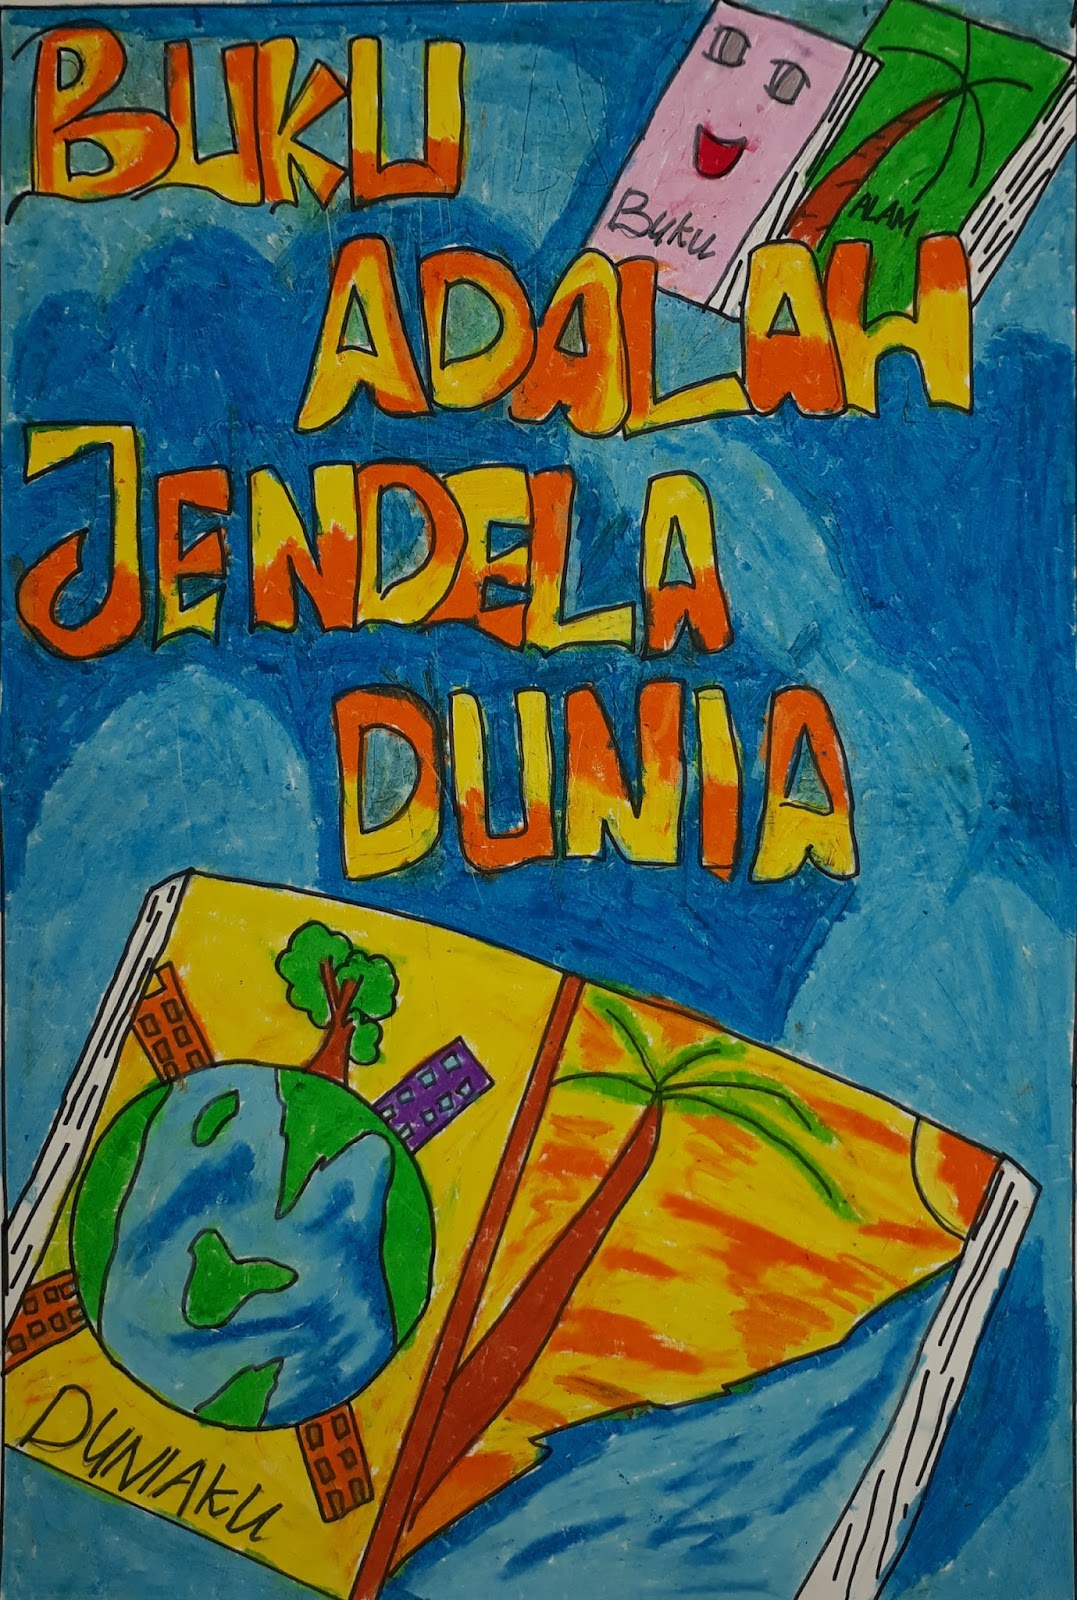 20 Contoh Gambar Poster Pendidikan untuk Anak SD dan SMP, Digambar dengan  krayon atau pastel - Ruslan Wahid